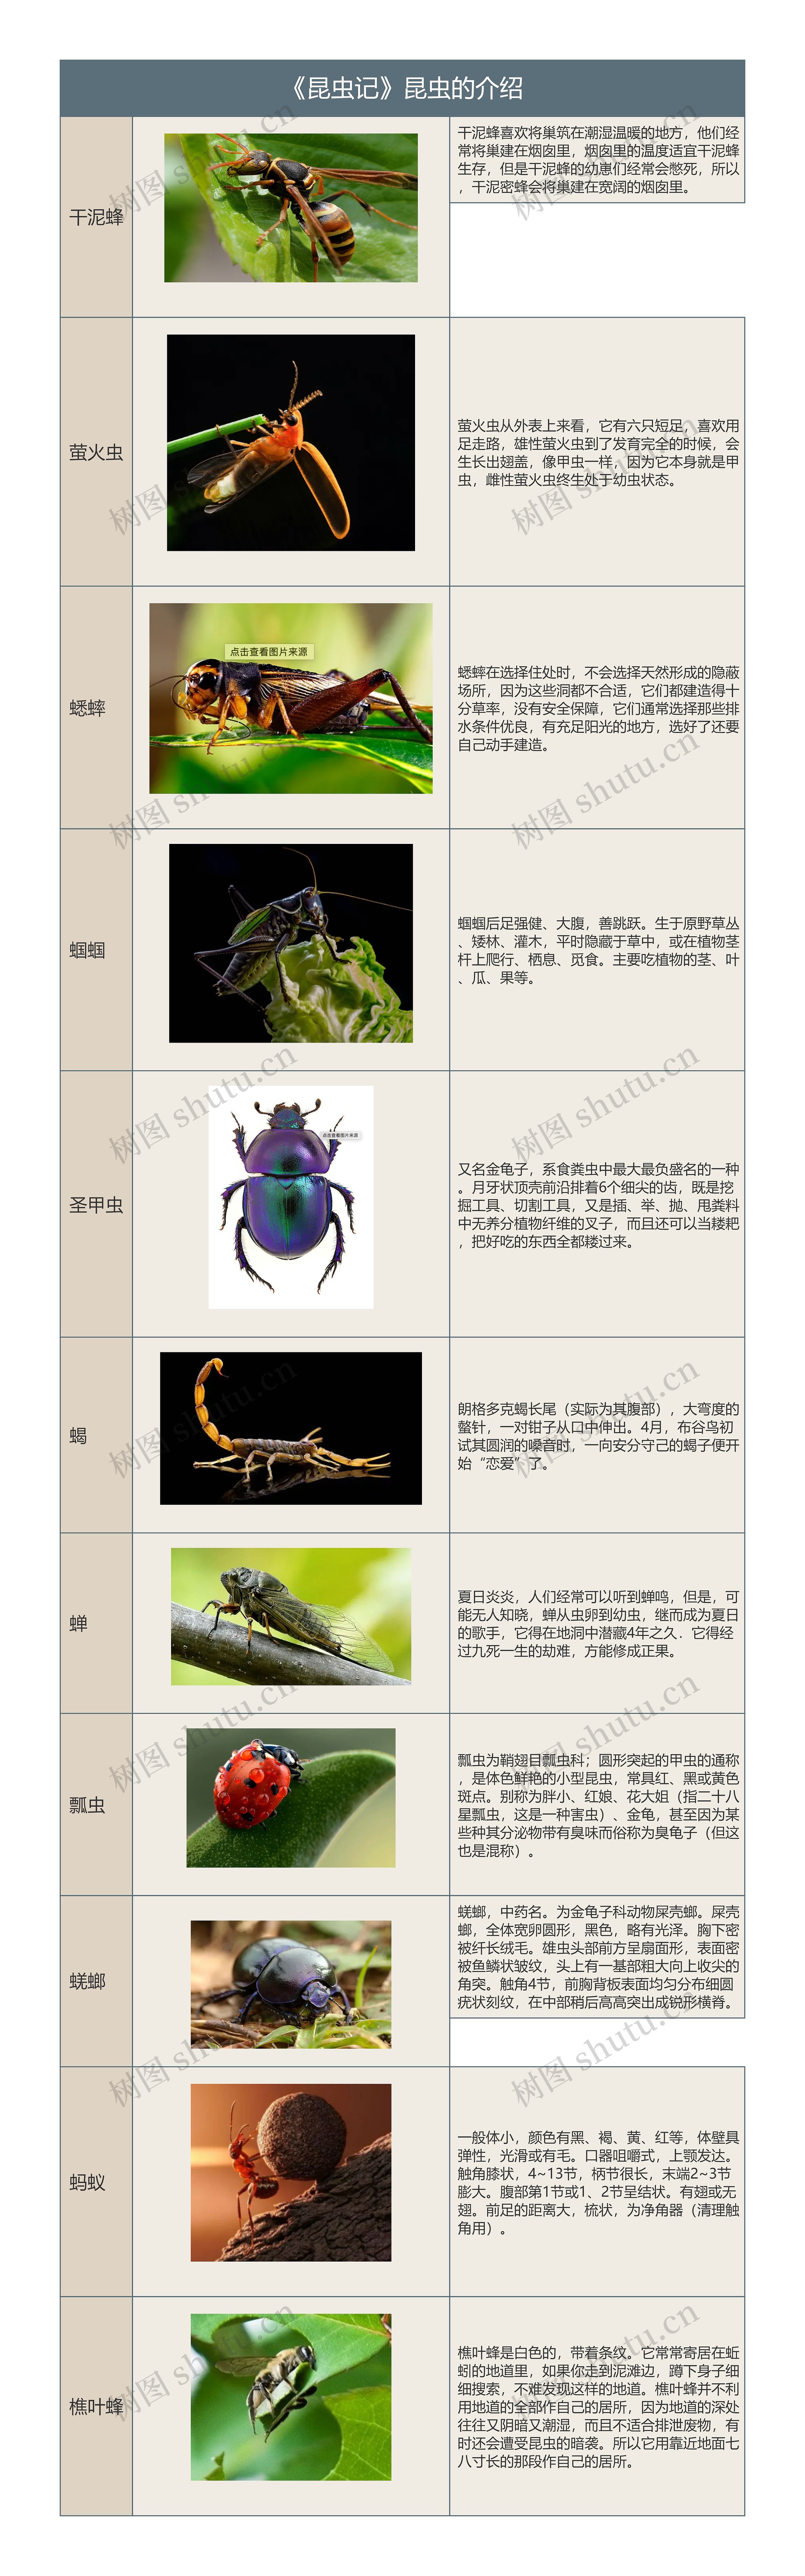 《昆虫记》中昆虫的介绍树形表格思维导图